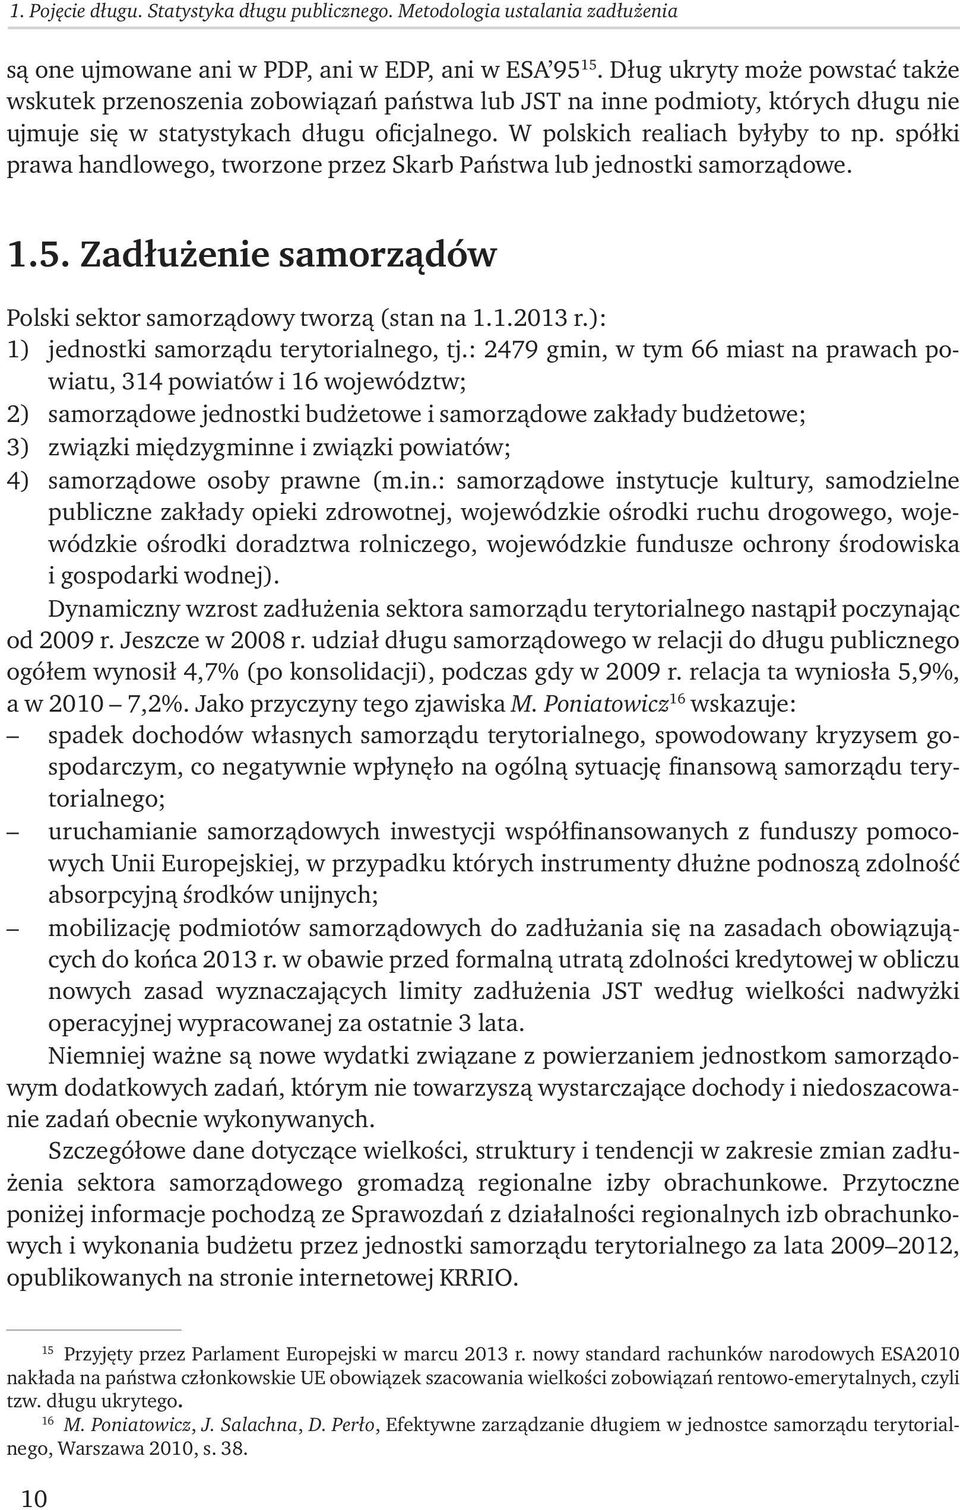 spółki prawa handlowego, tworzone przez Skarb Państwa lub jednostki samorządowe. 1.5. Zadłużenie samorządów Polski sektor samorządowy tworzą (stan na 1.1.2013 r.